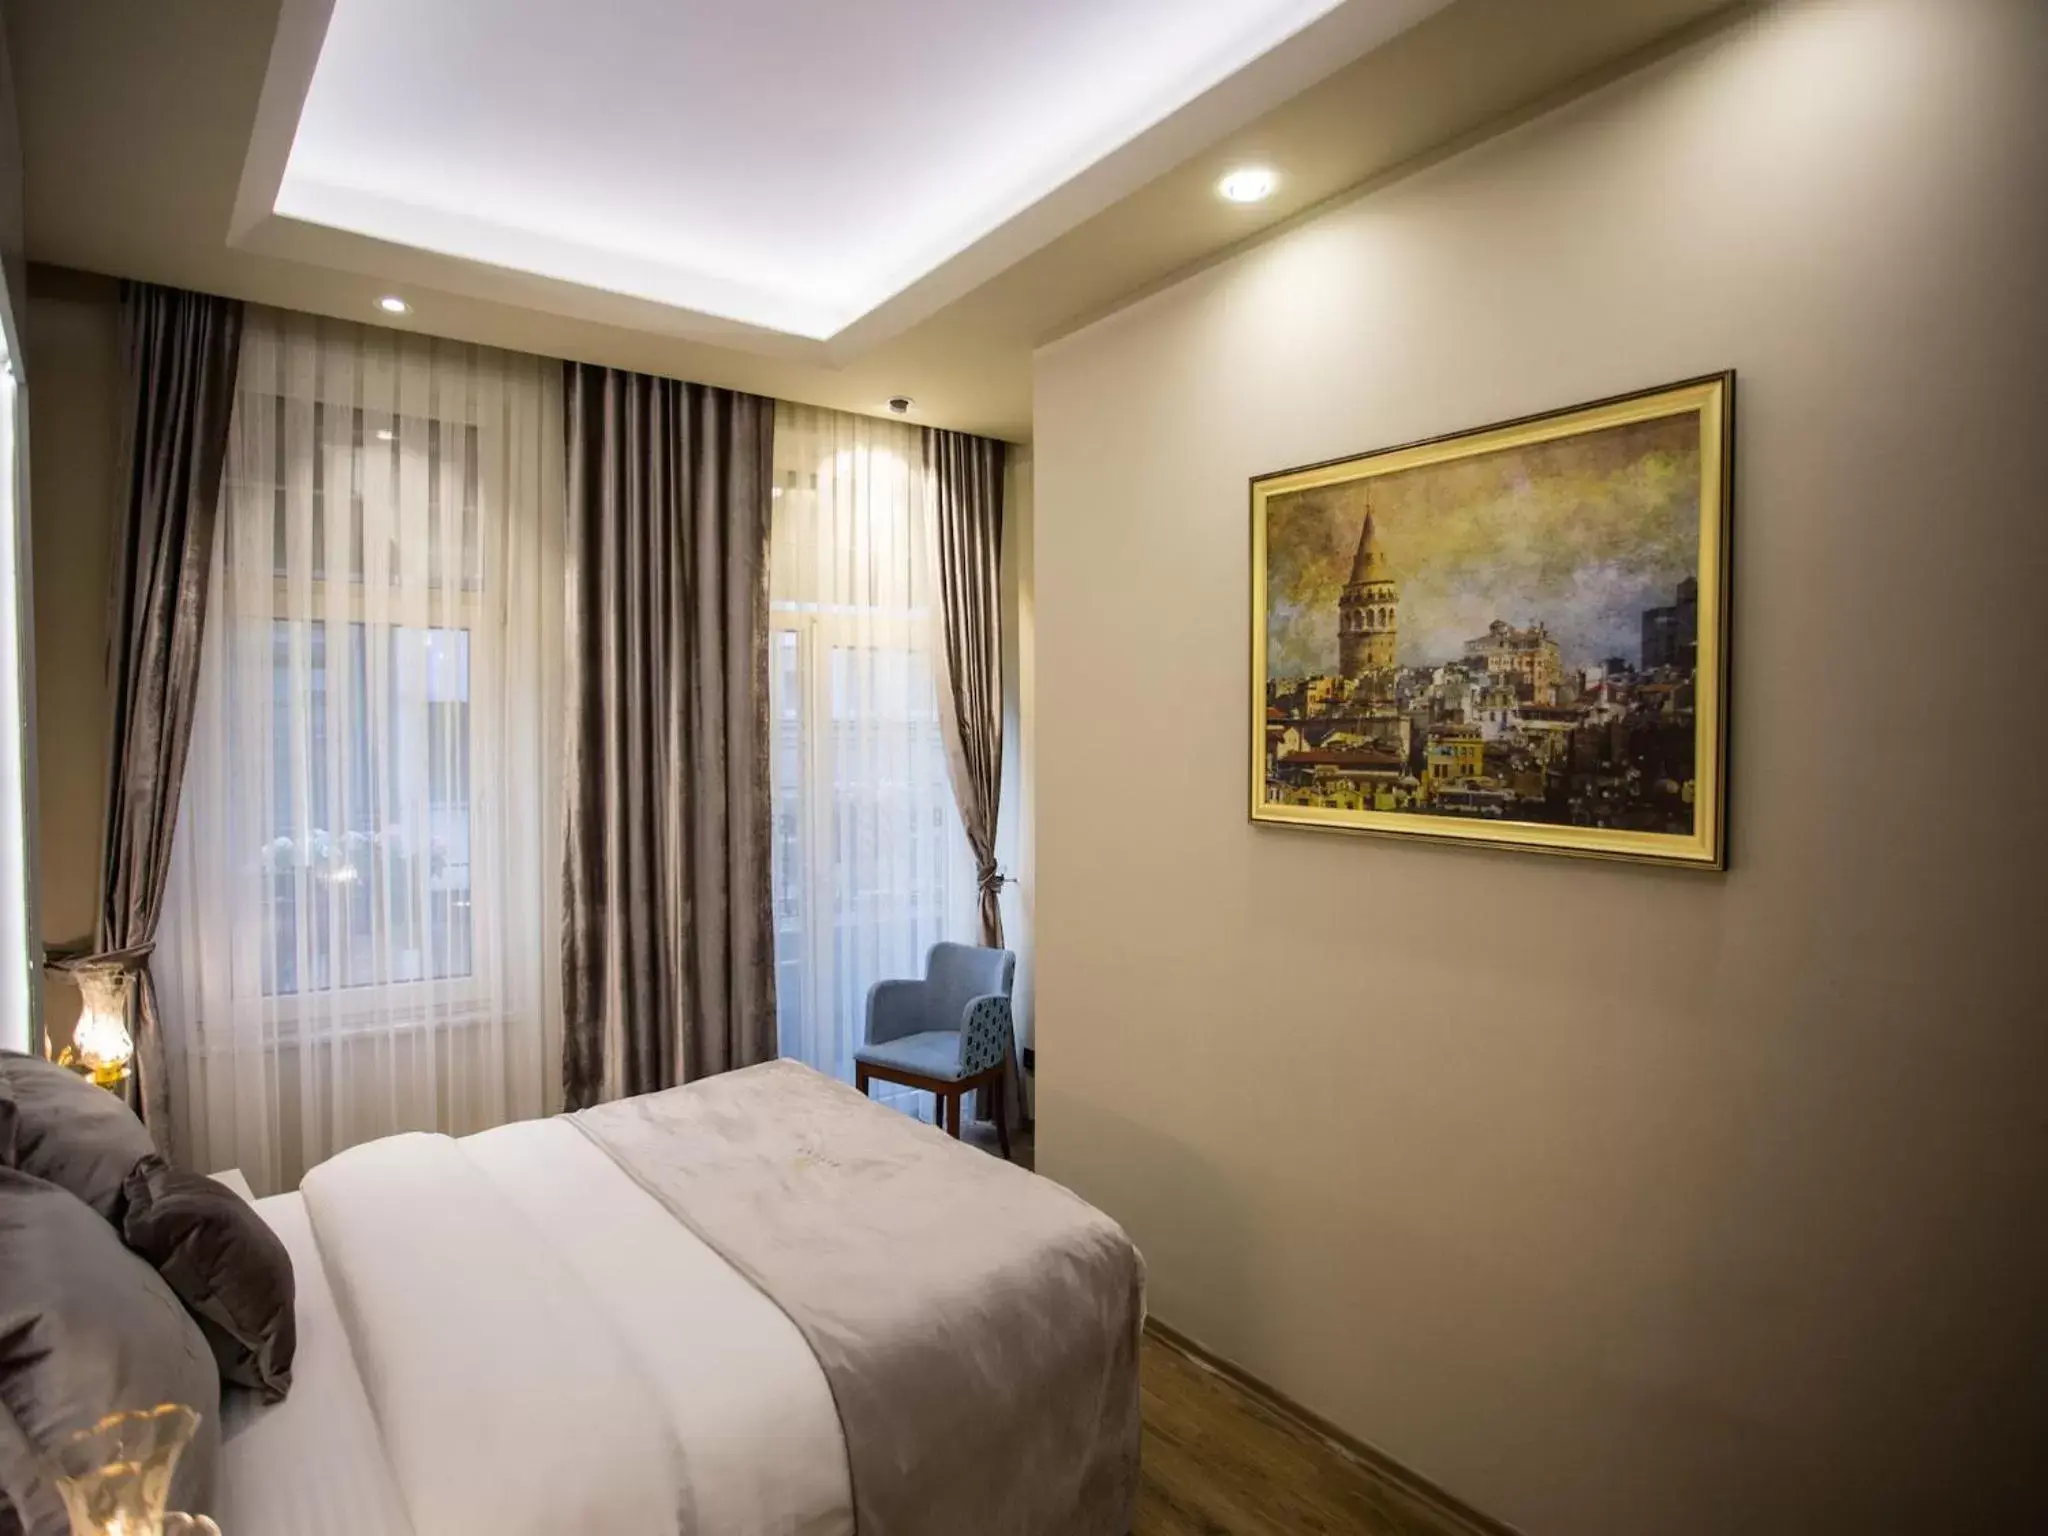 Bedroom, Room Photo in Bonne Sante Hotel